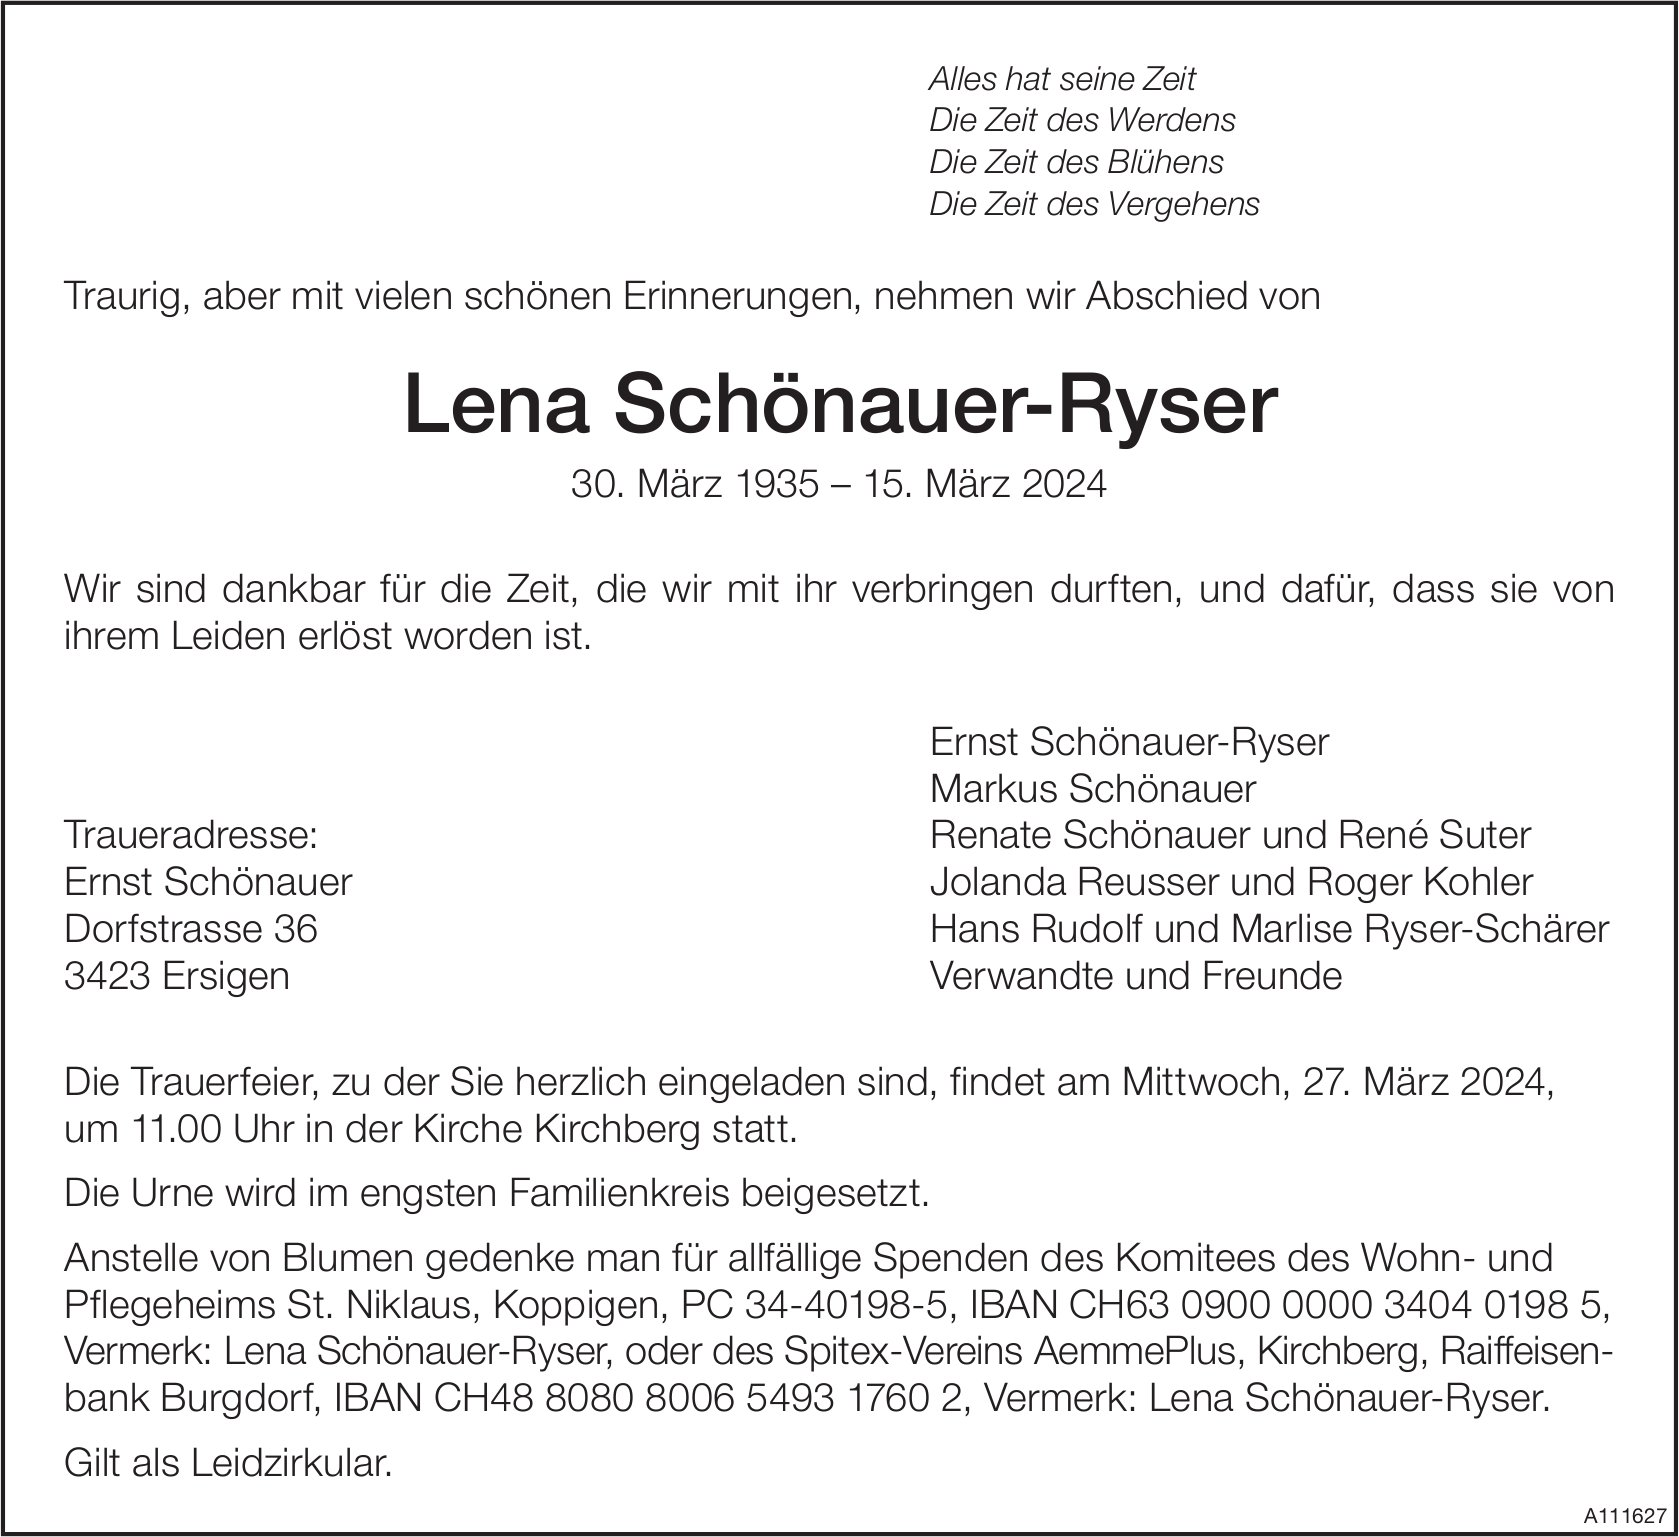 Lena Schönauer-Ryser, März 2024 / TA